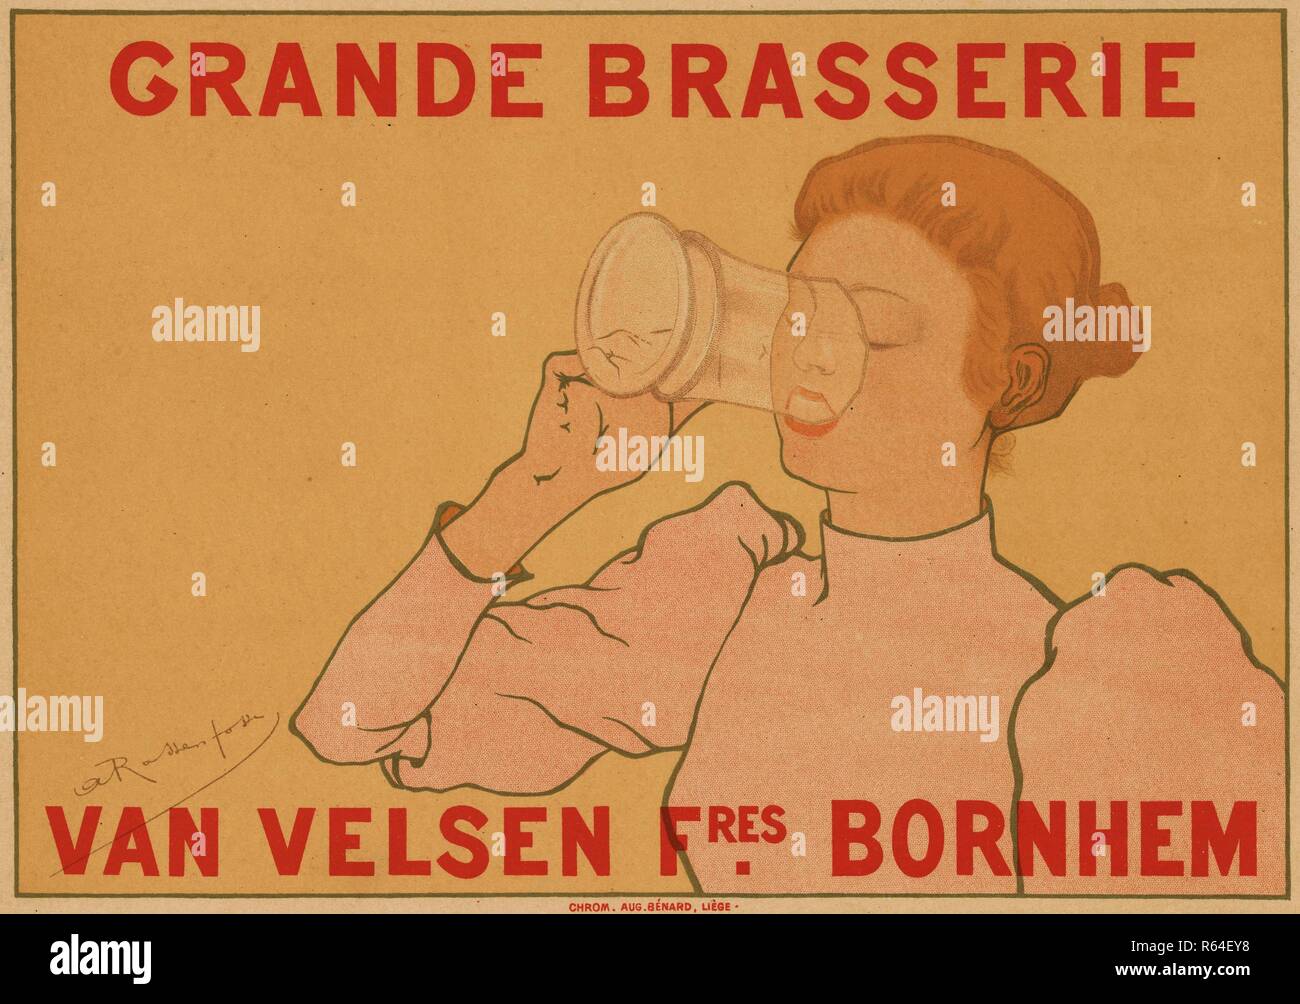 Grande brasserie Van Velsen frères Bornhem from the album Les Maîtres de l'affiche (Album I). Dimensions: 29 cm x 39.9 cm, 20.5 cm x 29 cm. Museum: Van Gogh Museum, Amsterdam. Author: RASSENFOSSE, ARMAND. Stock Photo